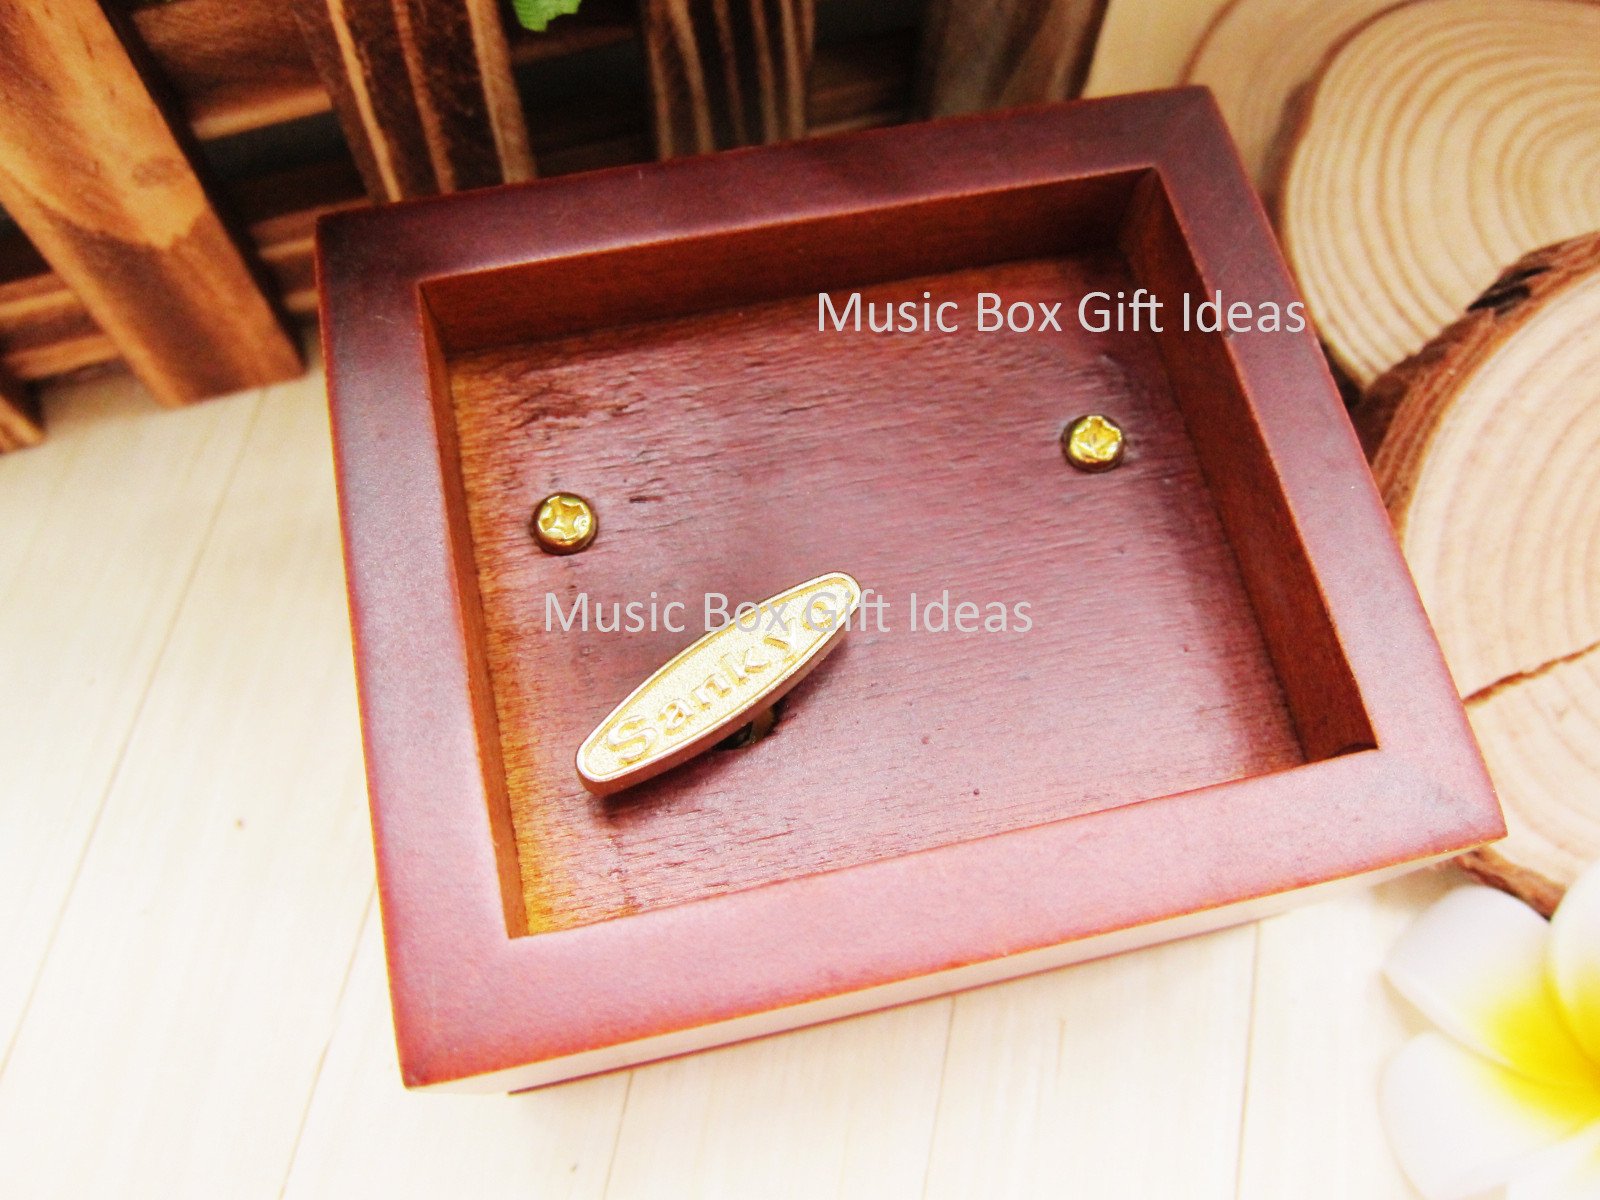 My Neighbor Totoro Soundtrack Tonari no Totoro from Studio Ghibli 18-Note Music Box Gift (Wooden Clockwork) - Music Box Gift Ideas